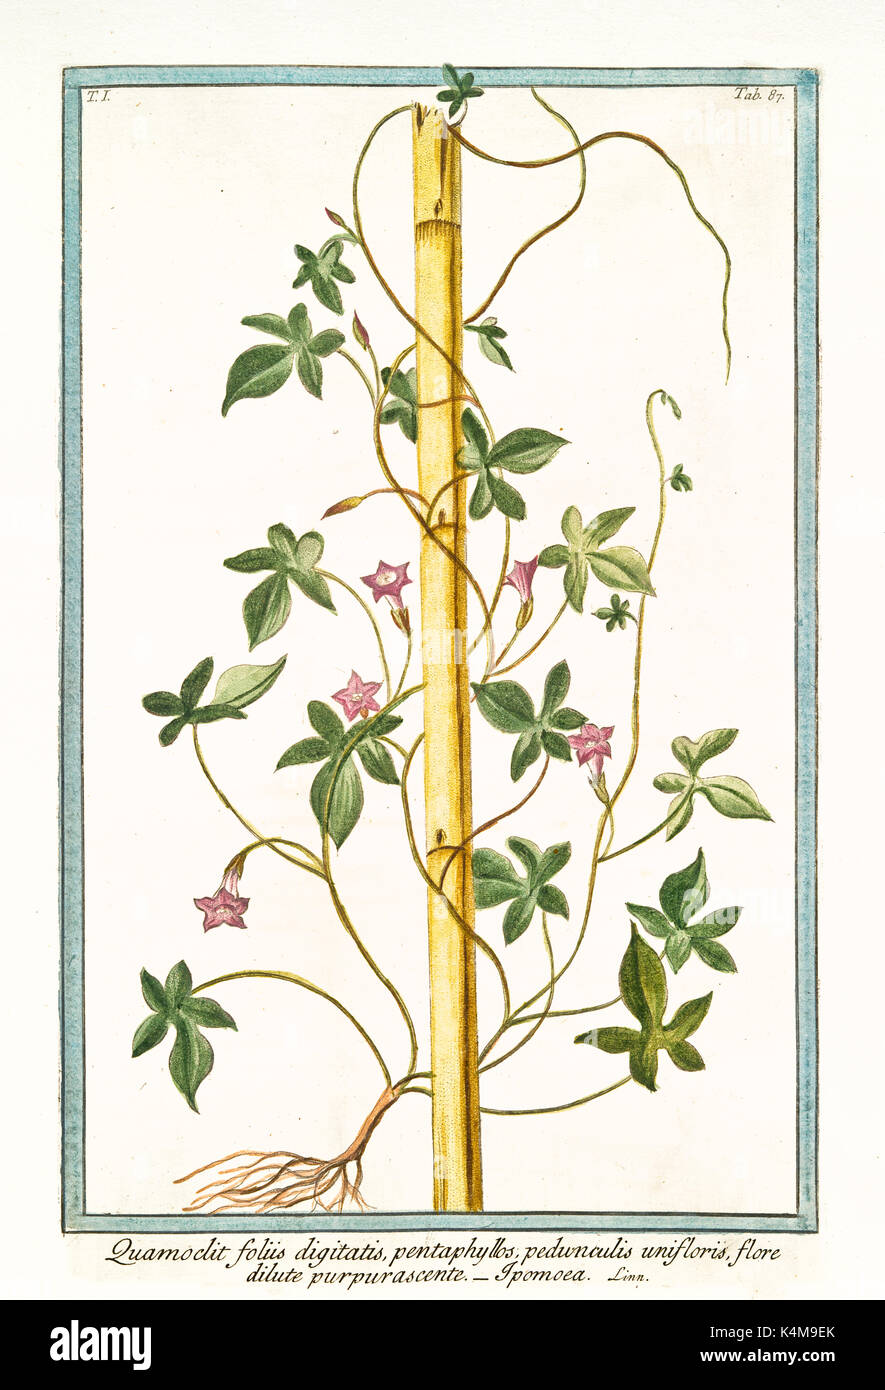 Vieille illustration d'Ipomoea quamoclit foliis (digitatis violacea). Par G. Bonelli sur Hortus Romanus, publ. N. Martelli, Rome, 1772 - 93 Banque D'Images